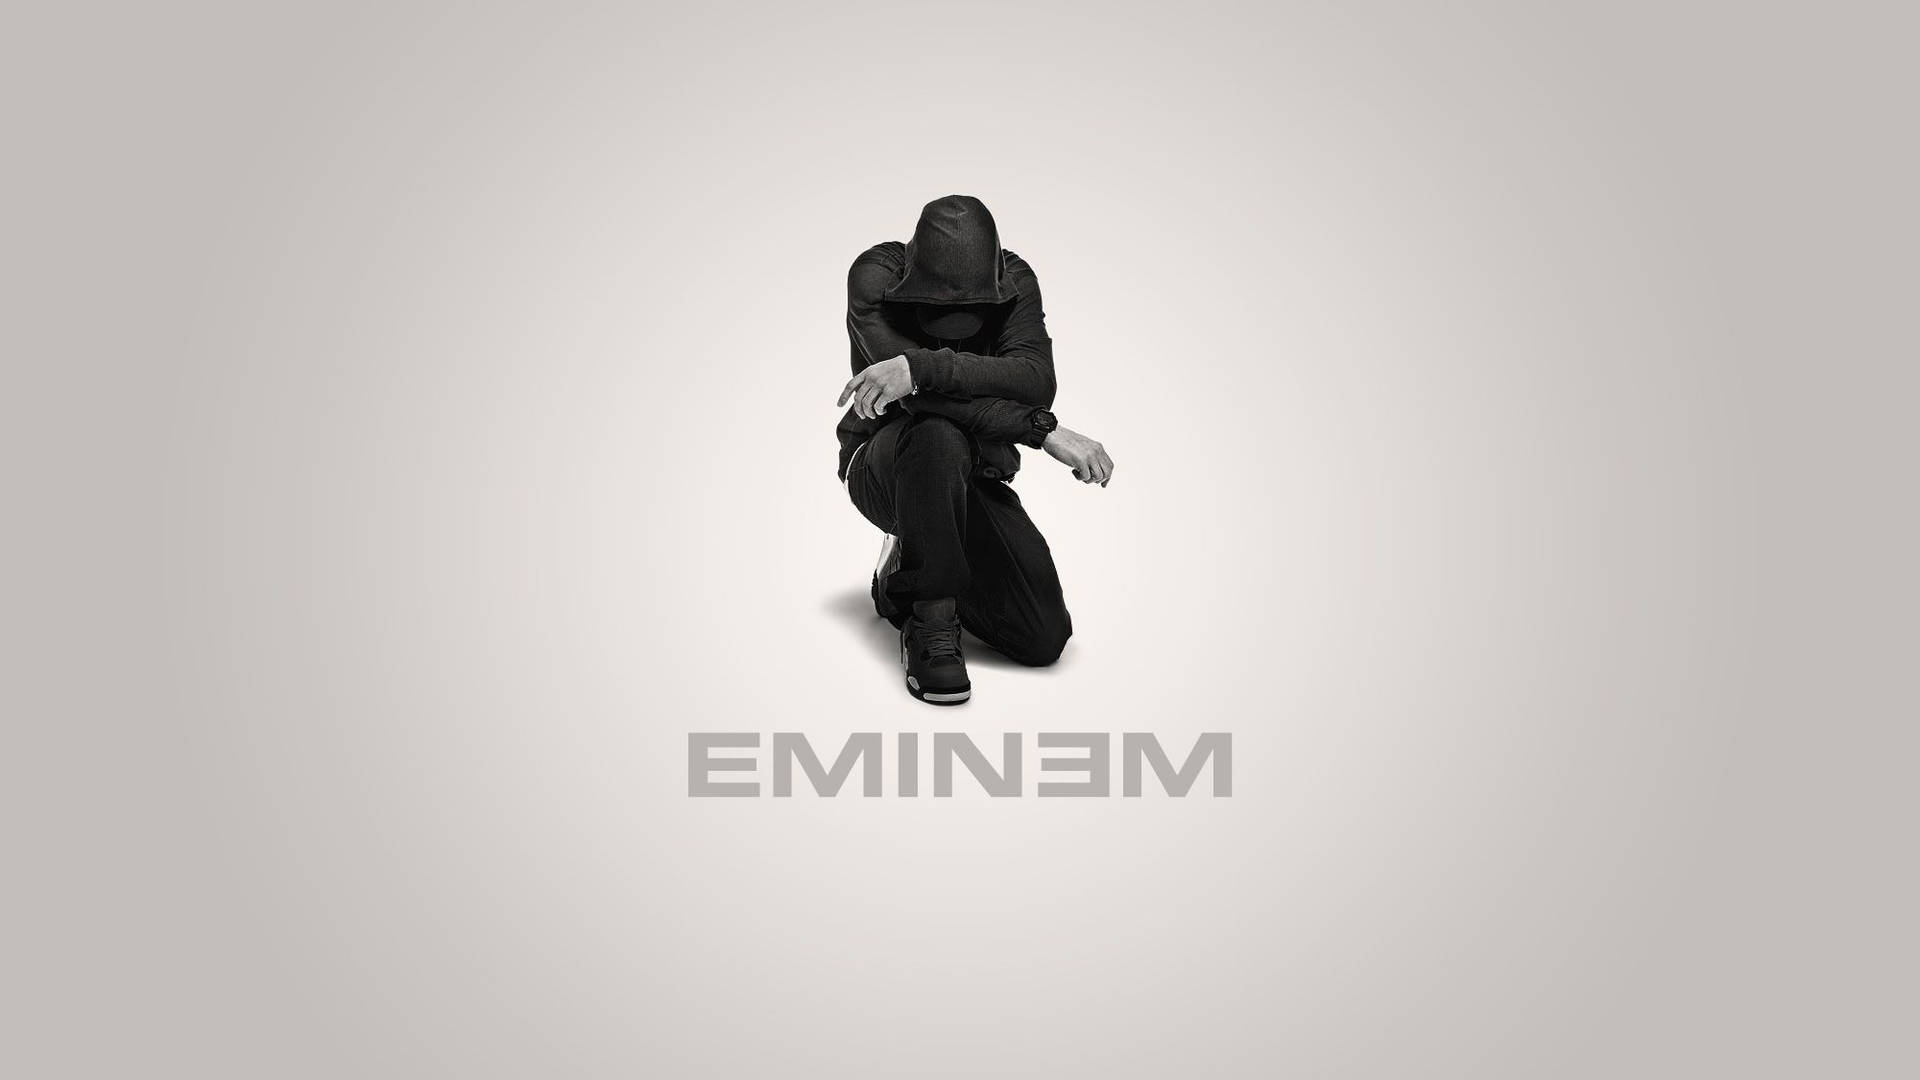 Kneeling Eminem In Black Background